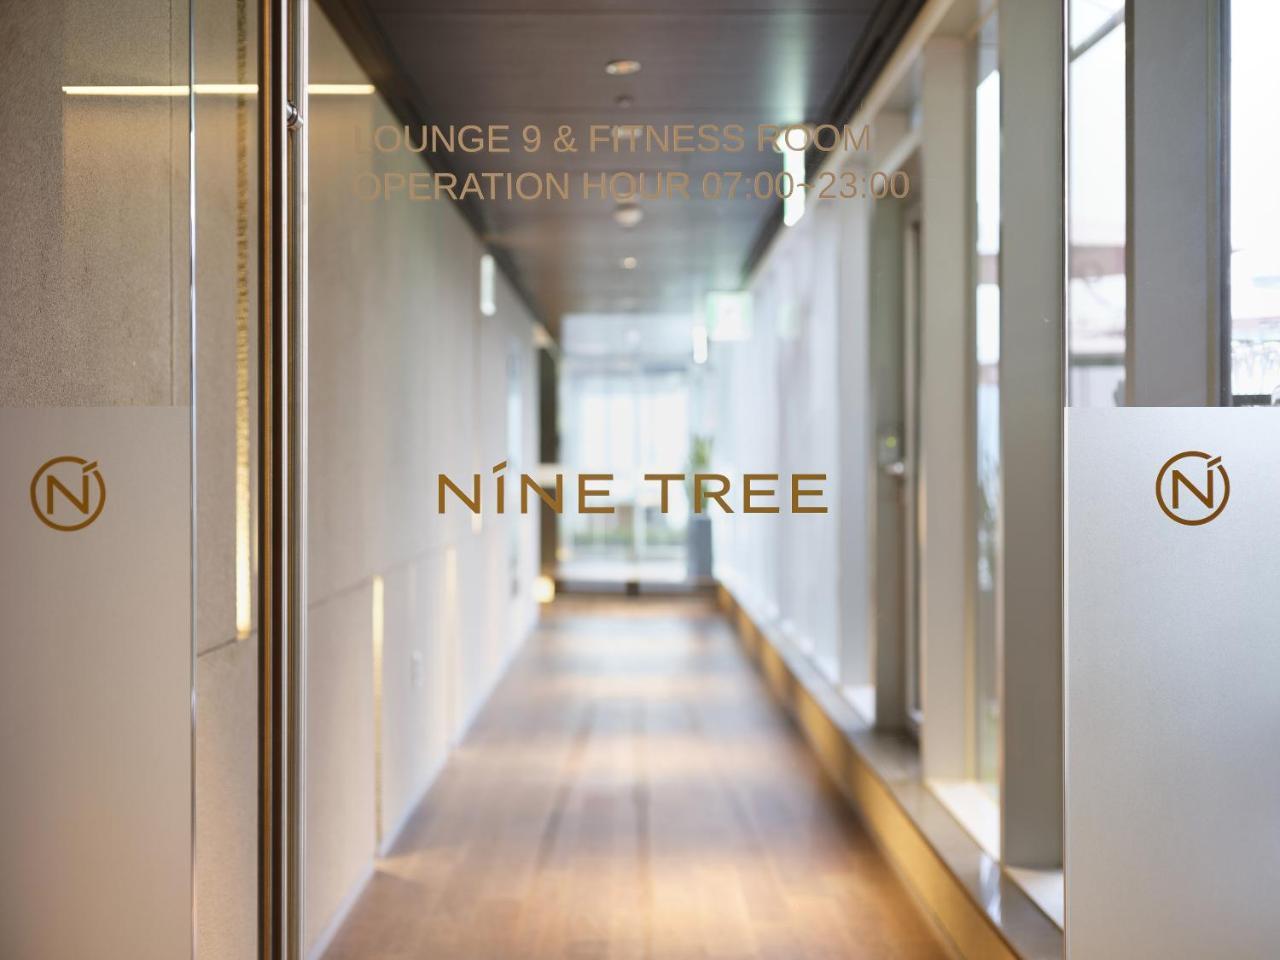 Nine Tree Premier Hotel Myeongdong 2 Szöul Kültér fotó